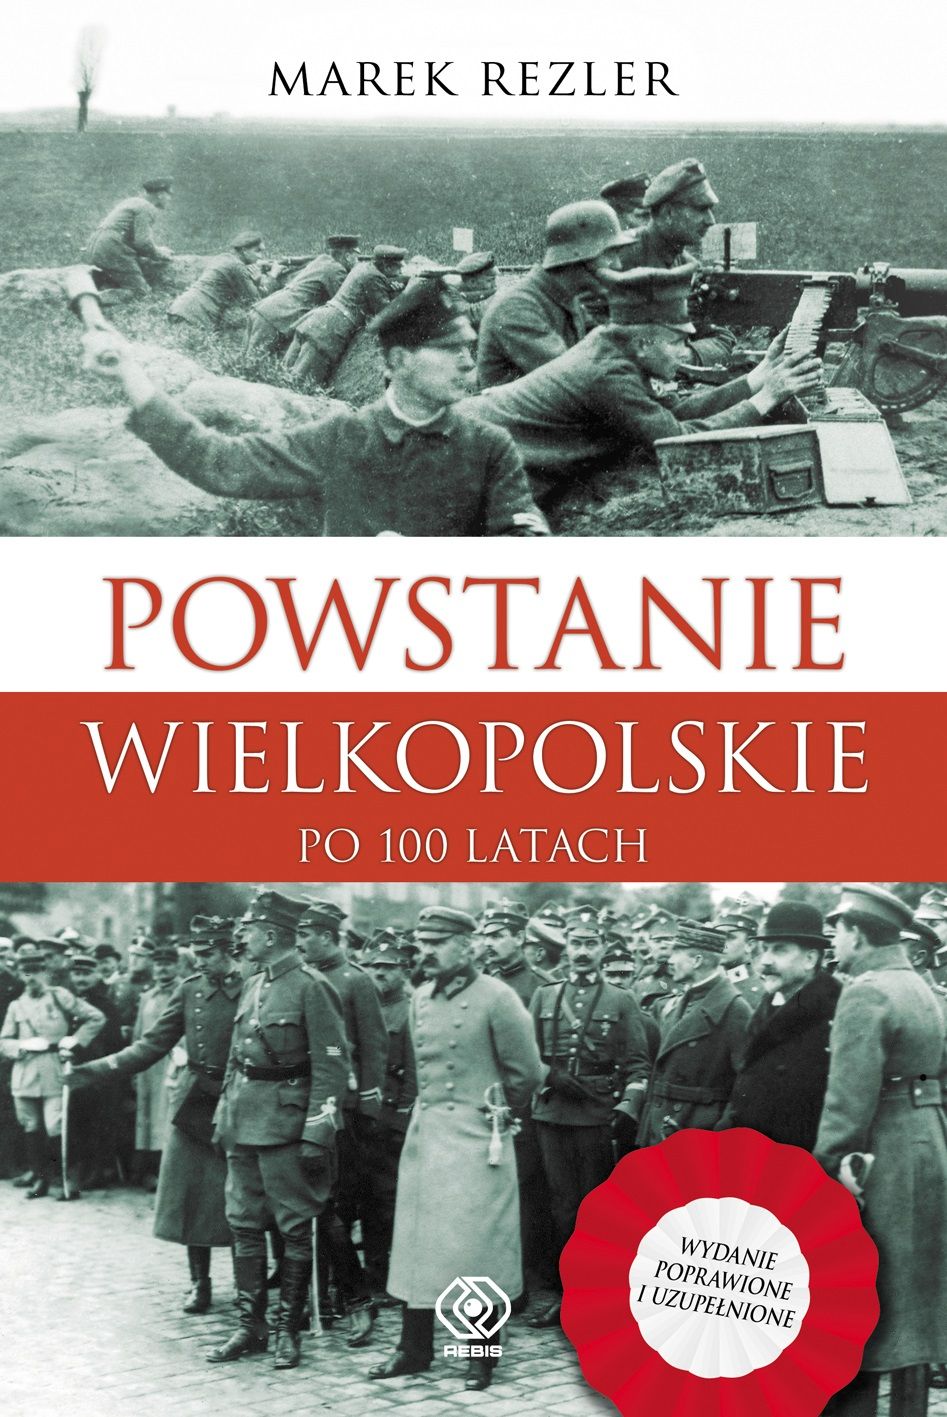 "Powstanie Wielkopolskie po 100 latach", Marek Rezler